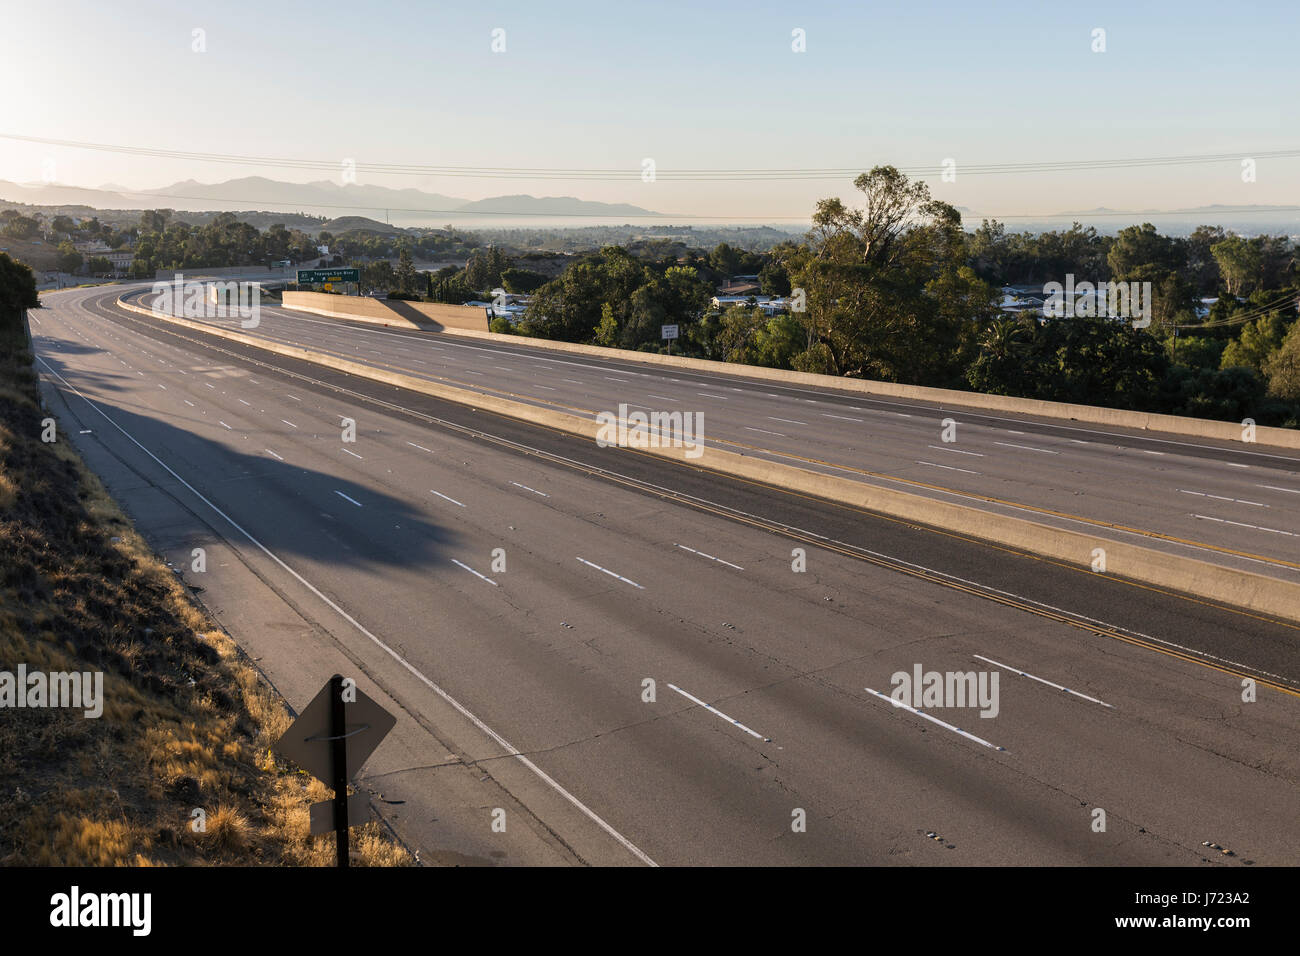 Dix vide lane freeway au lever du soleil dans la vallée de San Fernando de Los Angeles, Californie. Banque D'Images